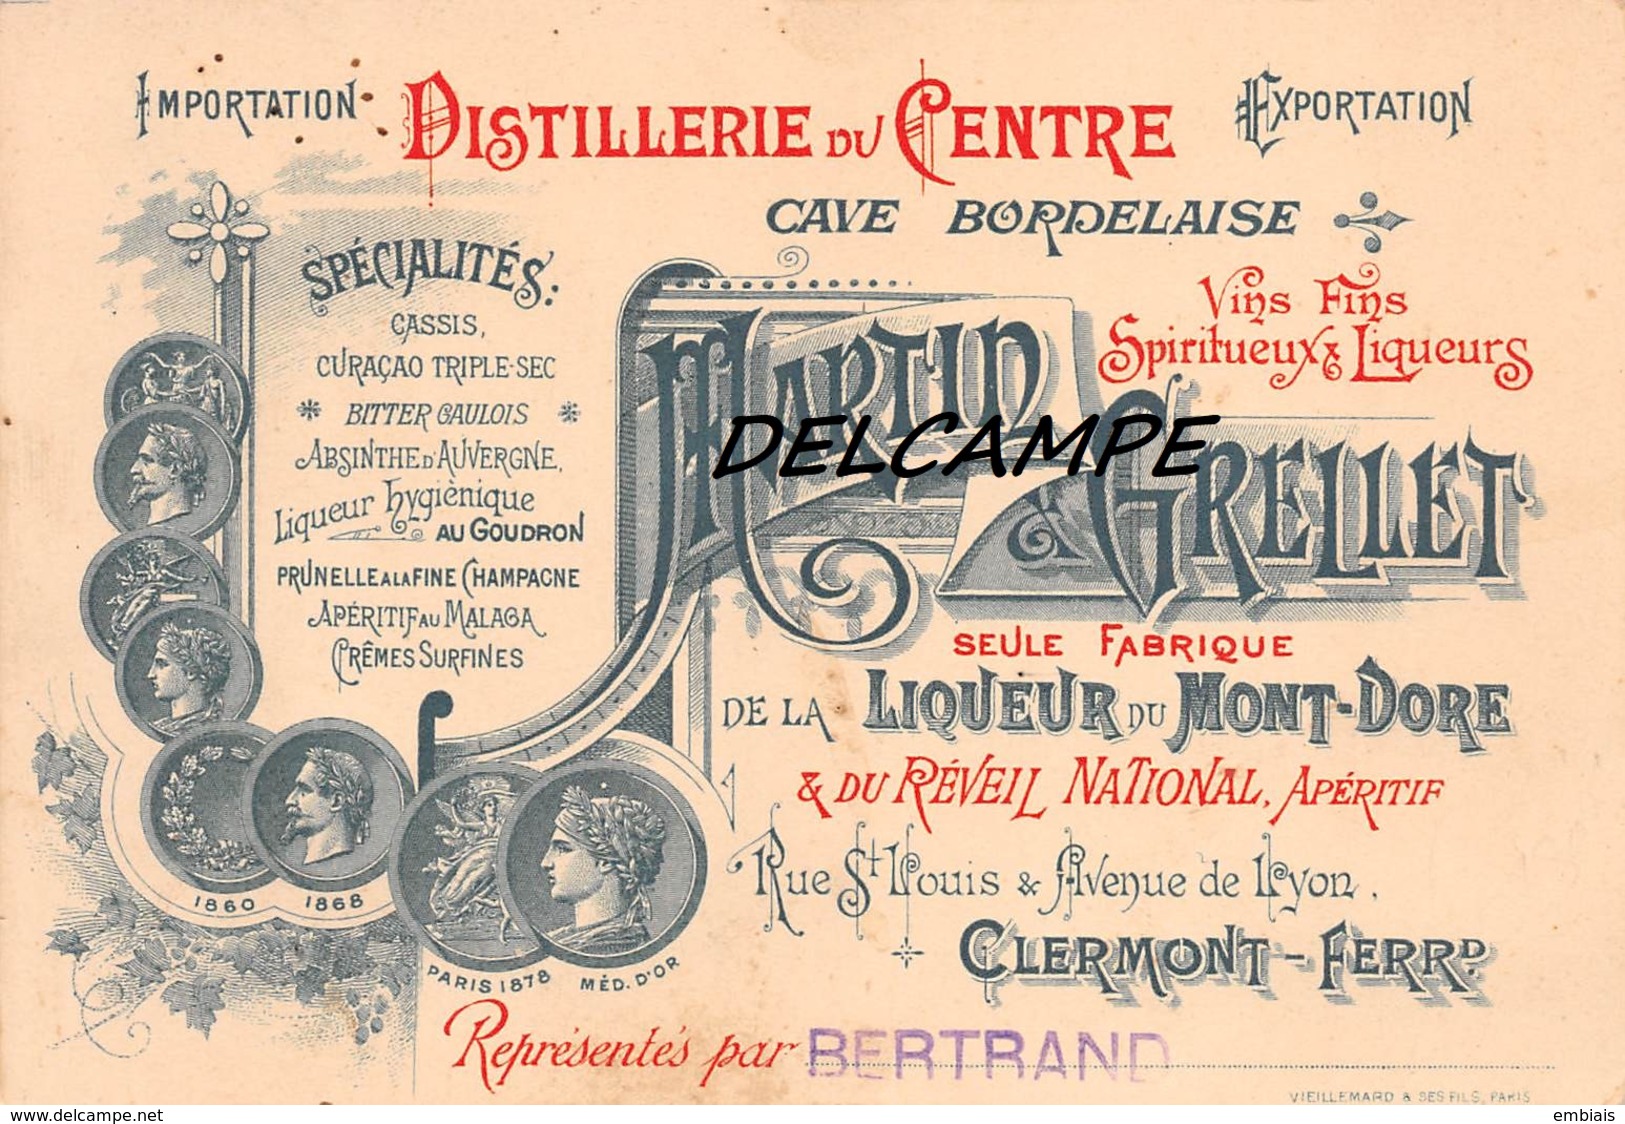 63 - CLERMONT-FERRAND - MARTIN & GRELLET Distillerie Du Centre Fabrique De La Liqueur Du Mont-Doré... - Visiting Cards